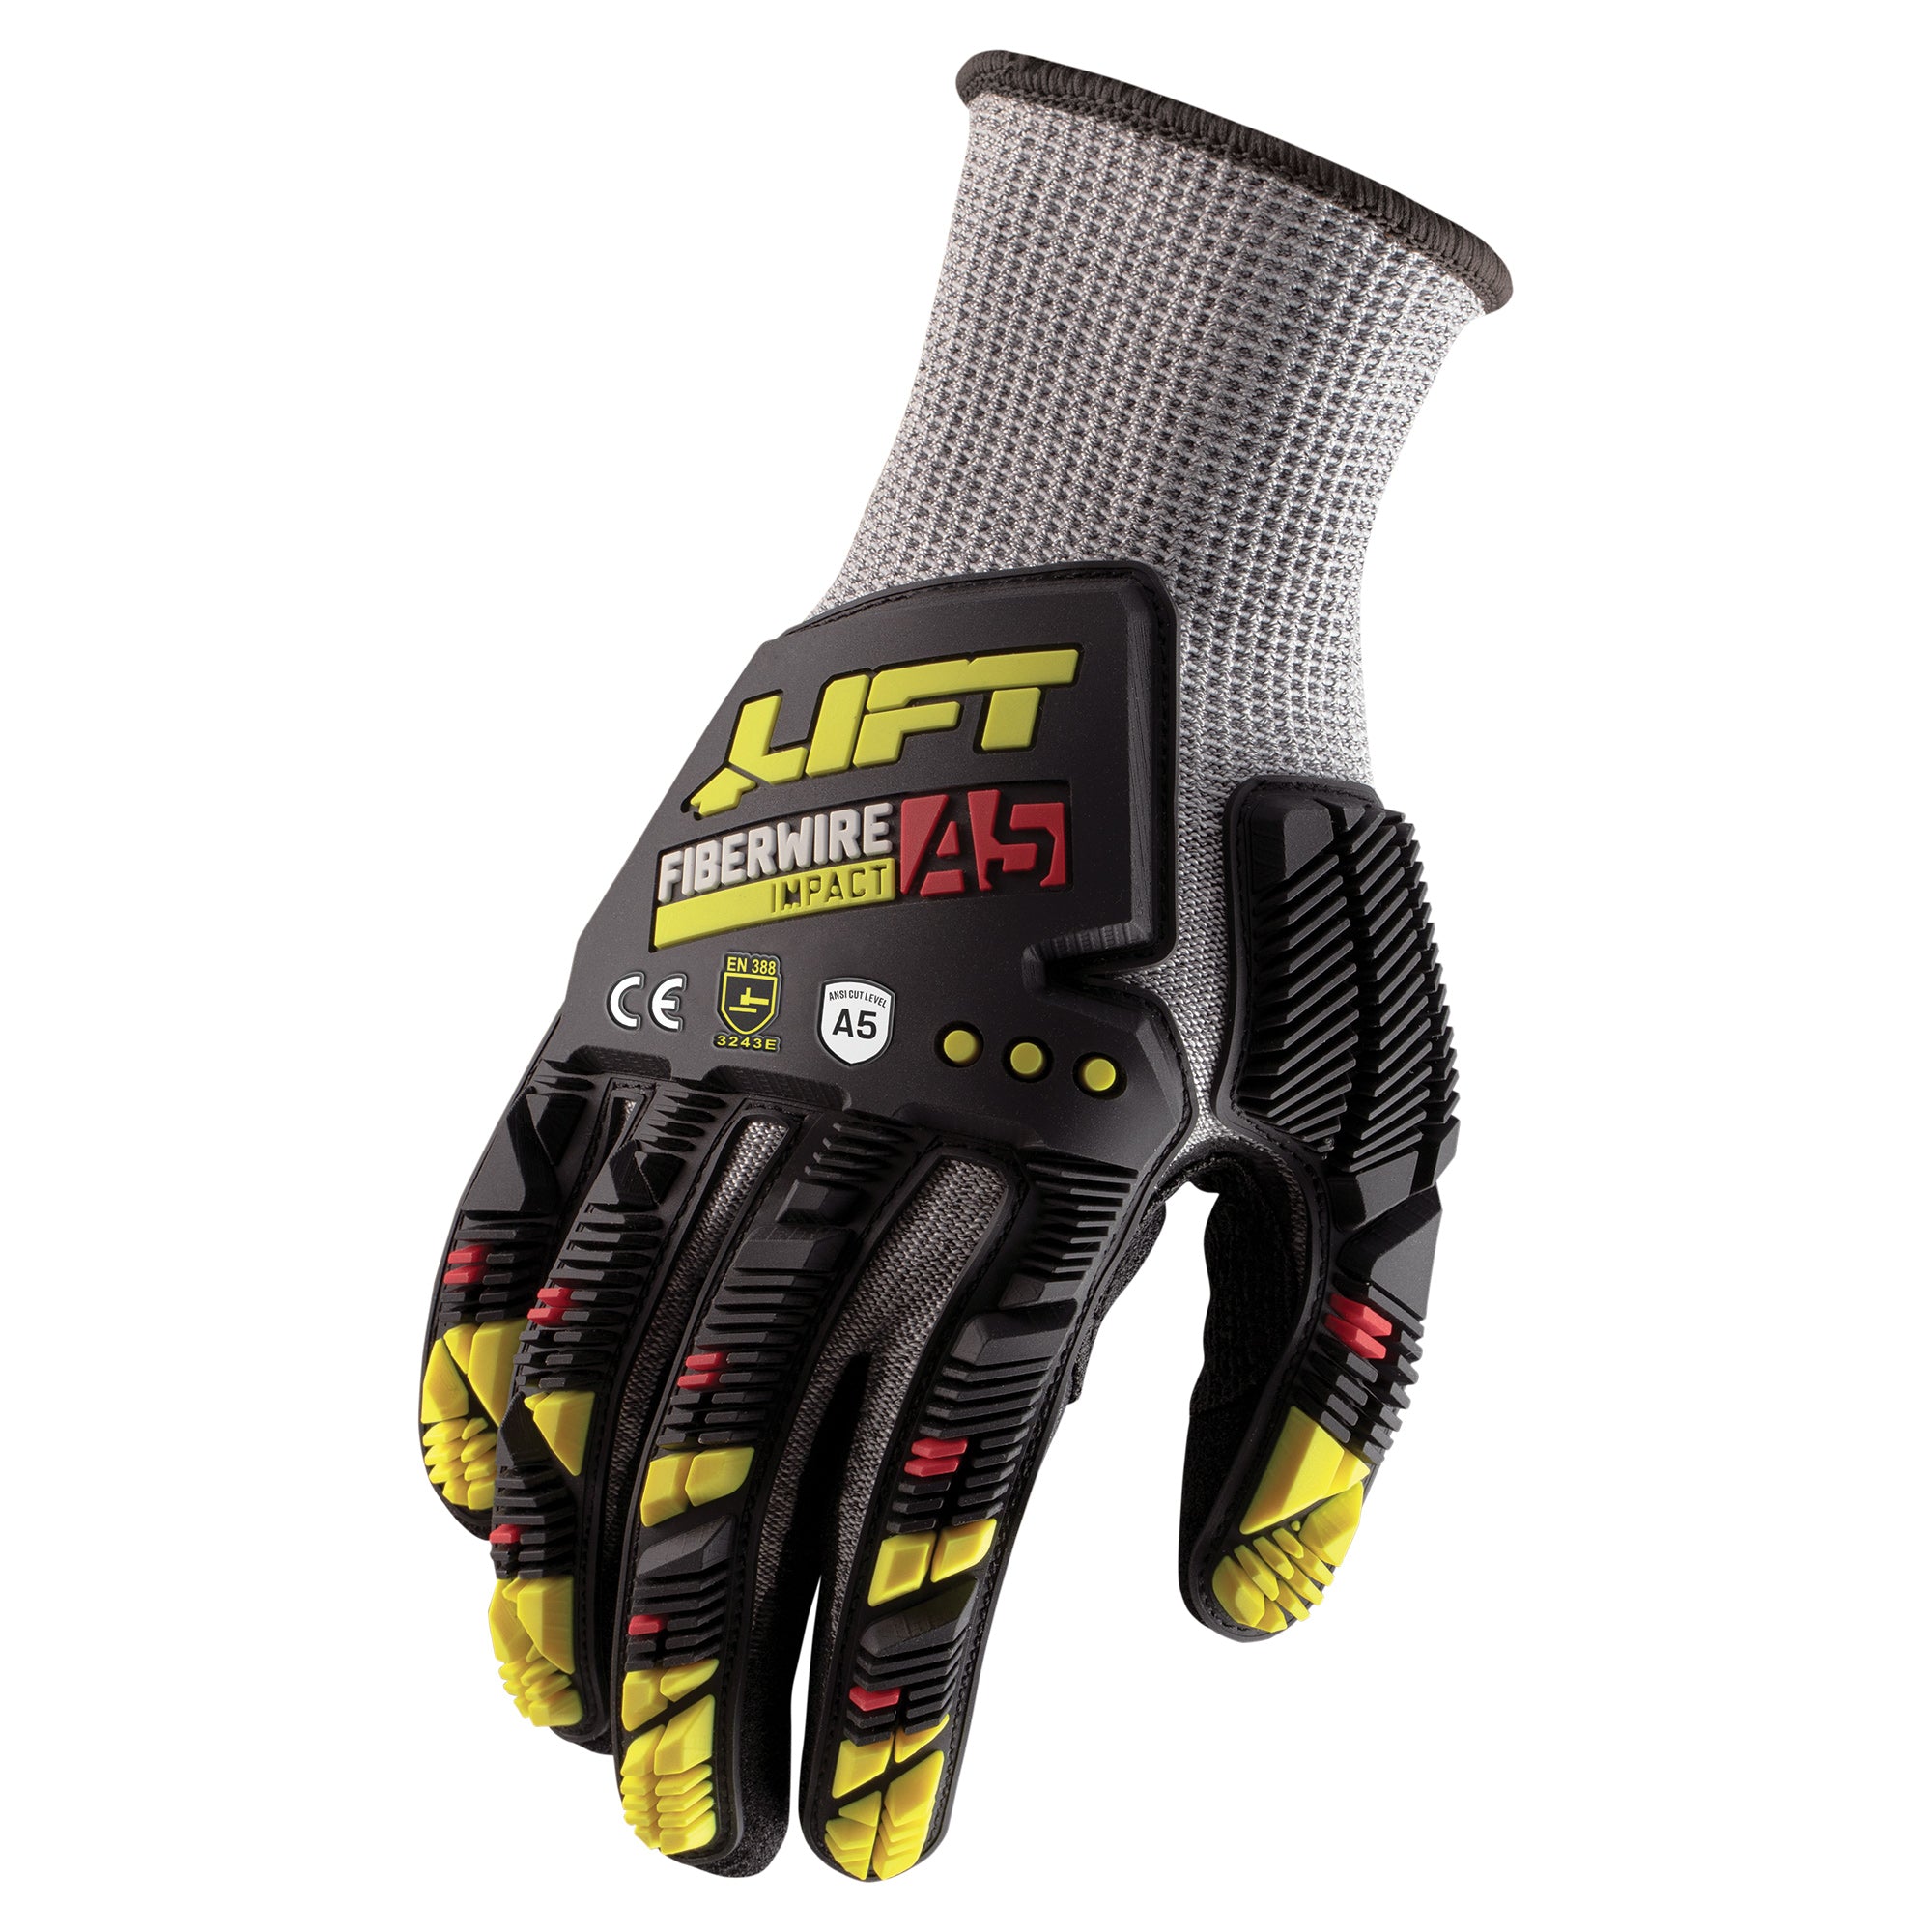 EDELRID Sticky Work Gloves - Altisafe Ltd